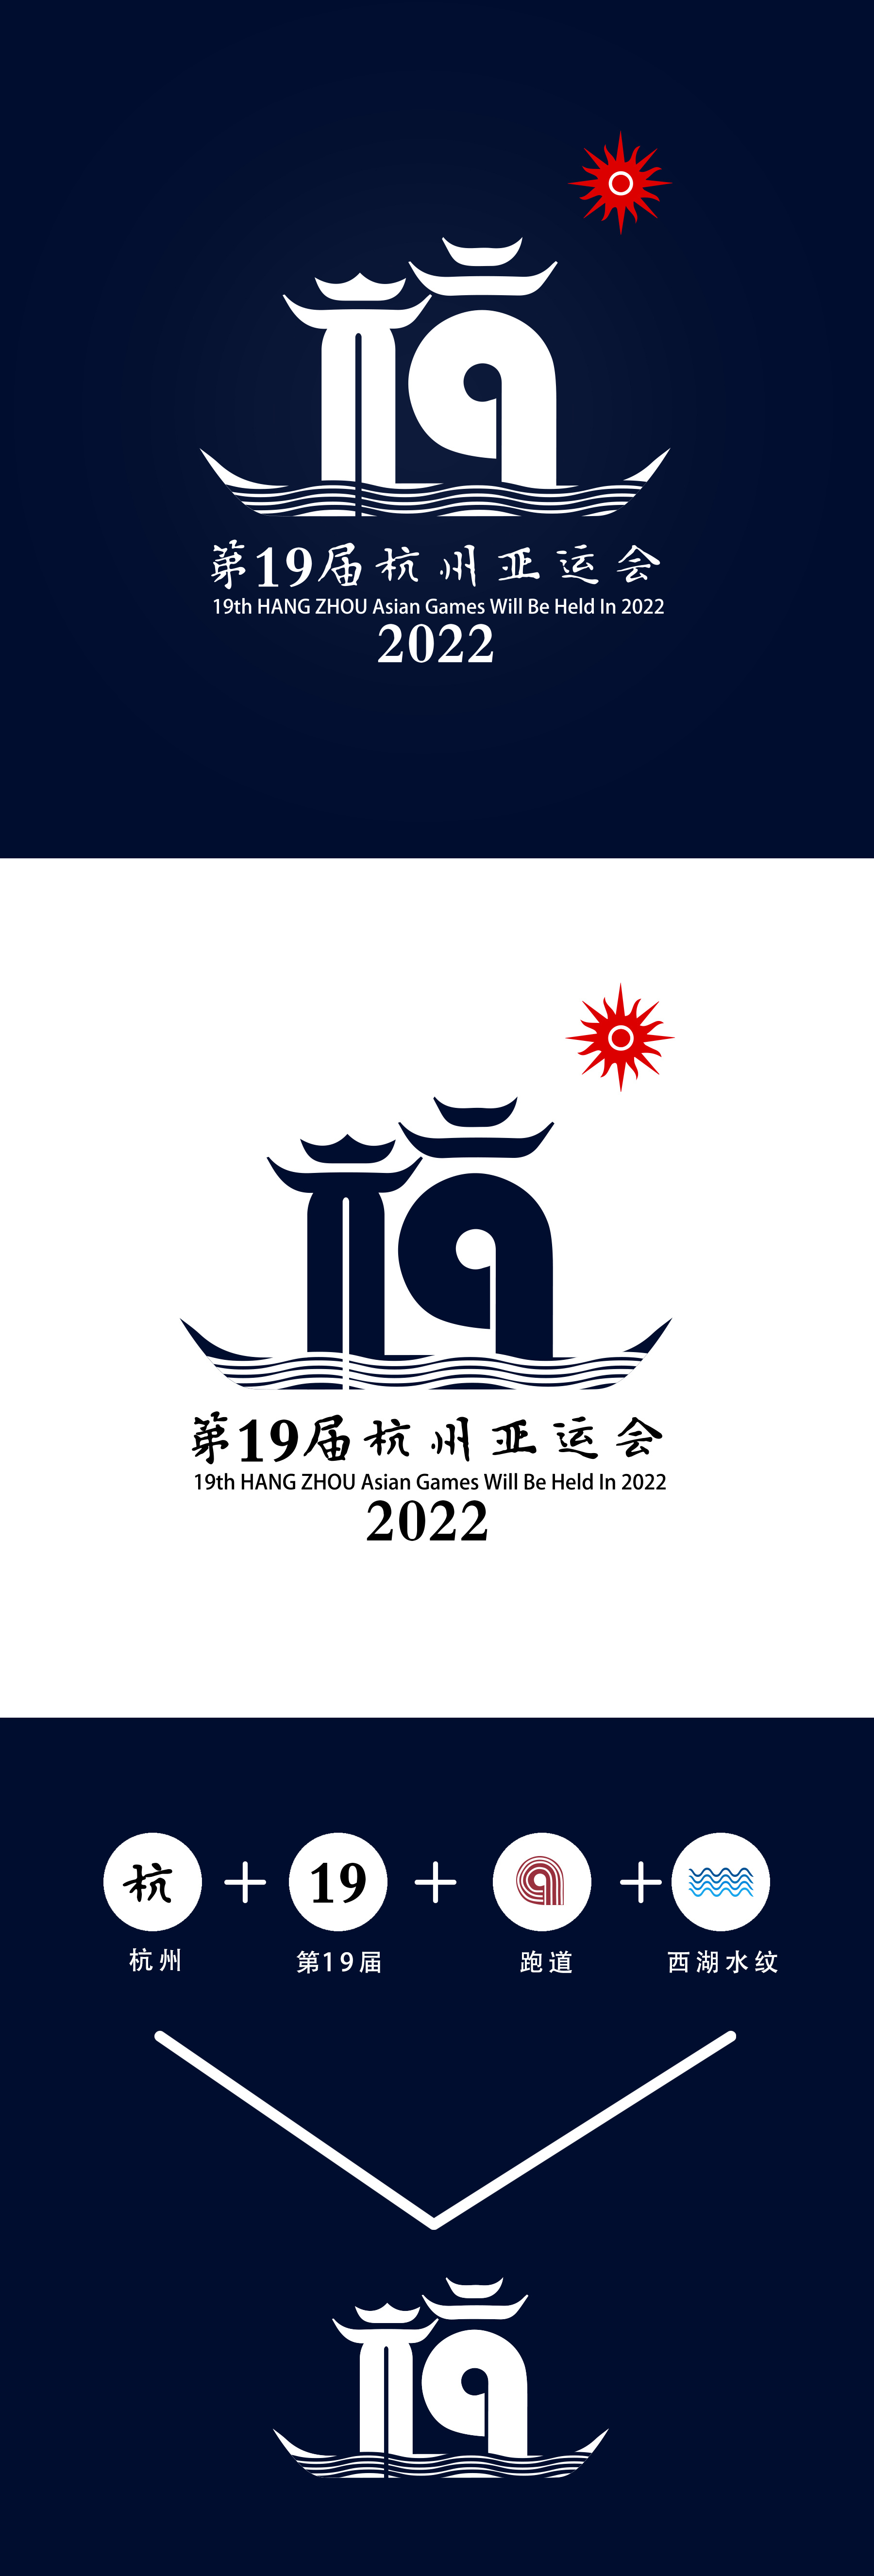 第19届杭州亚运会部分标示(非官方的,自己设计的)